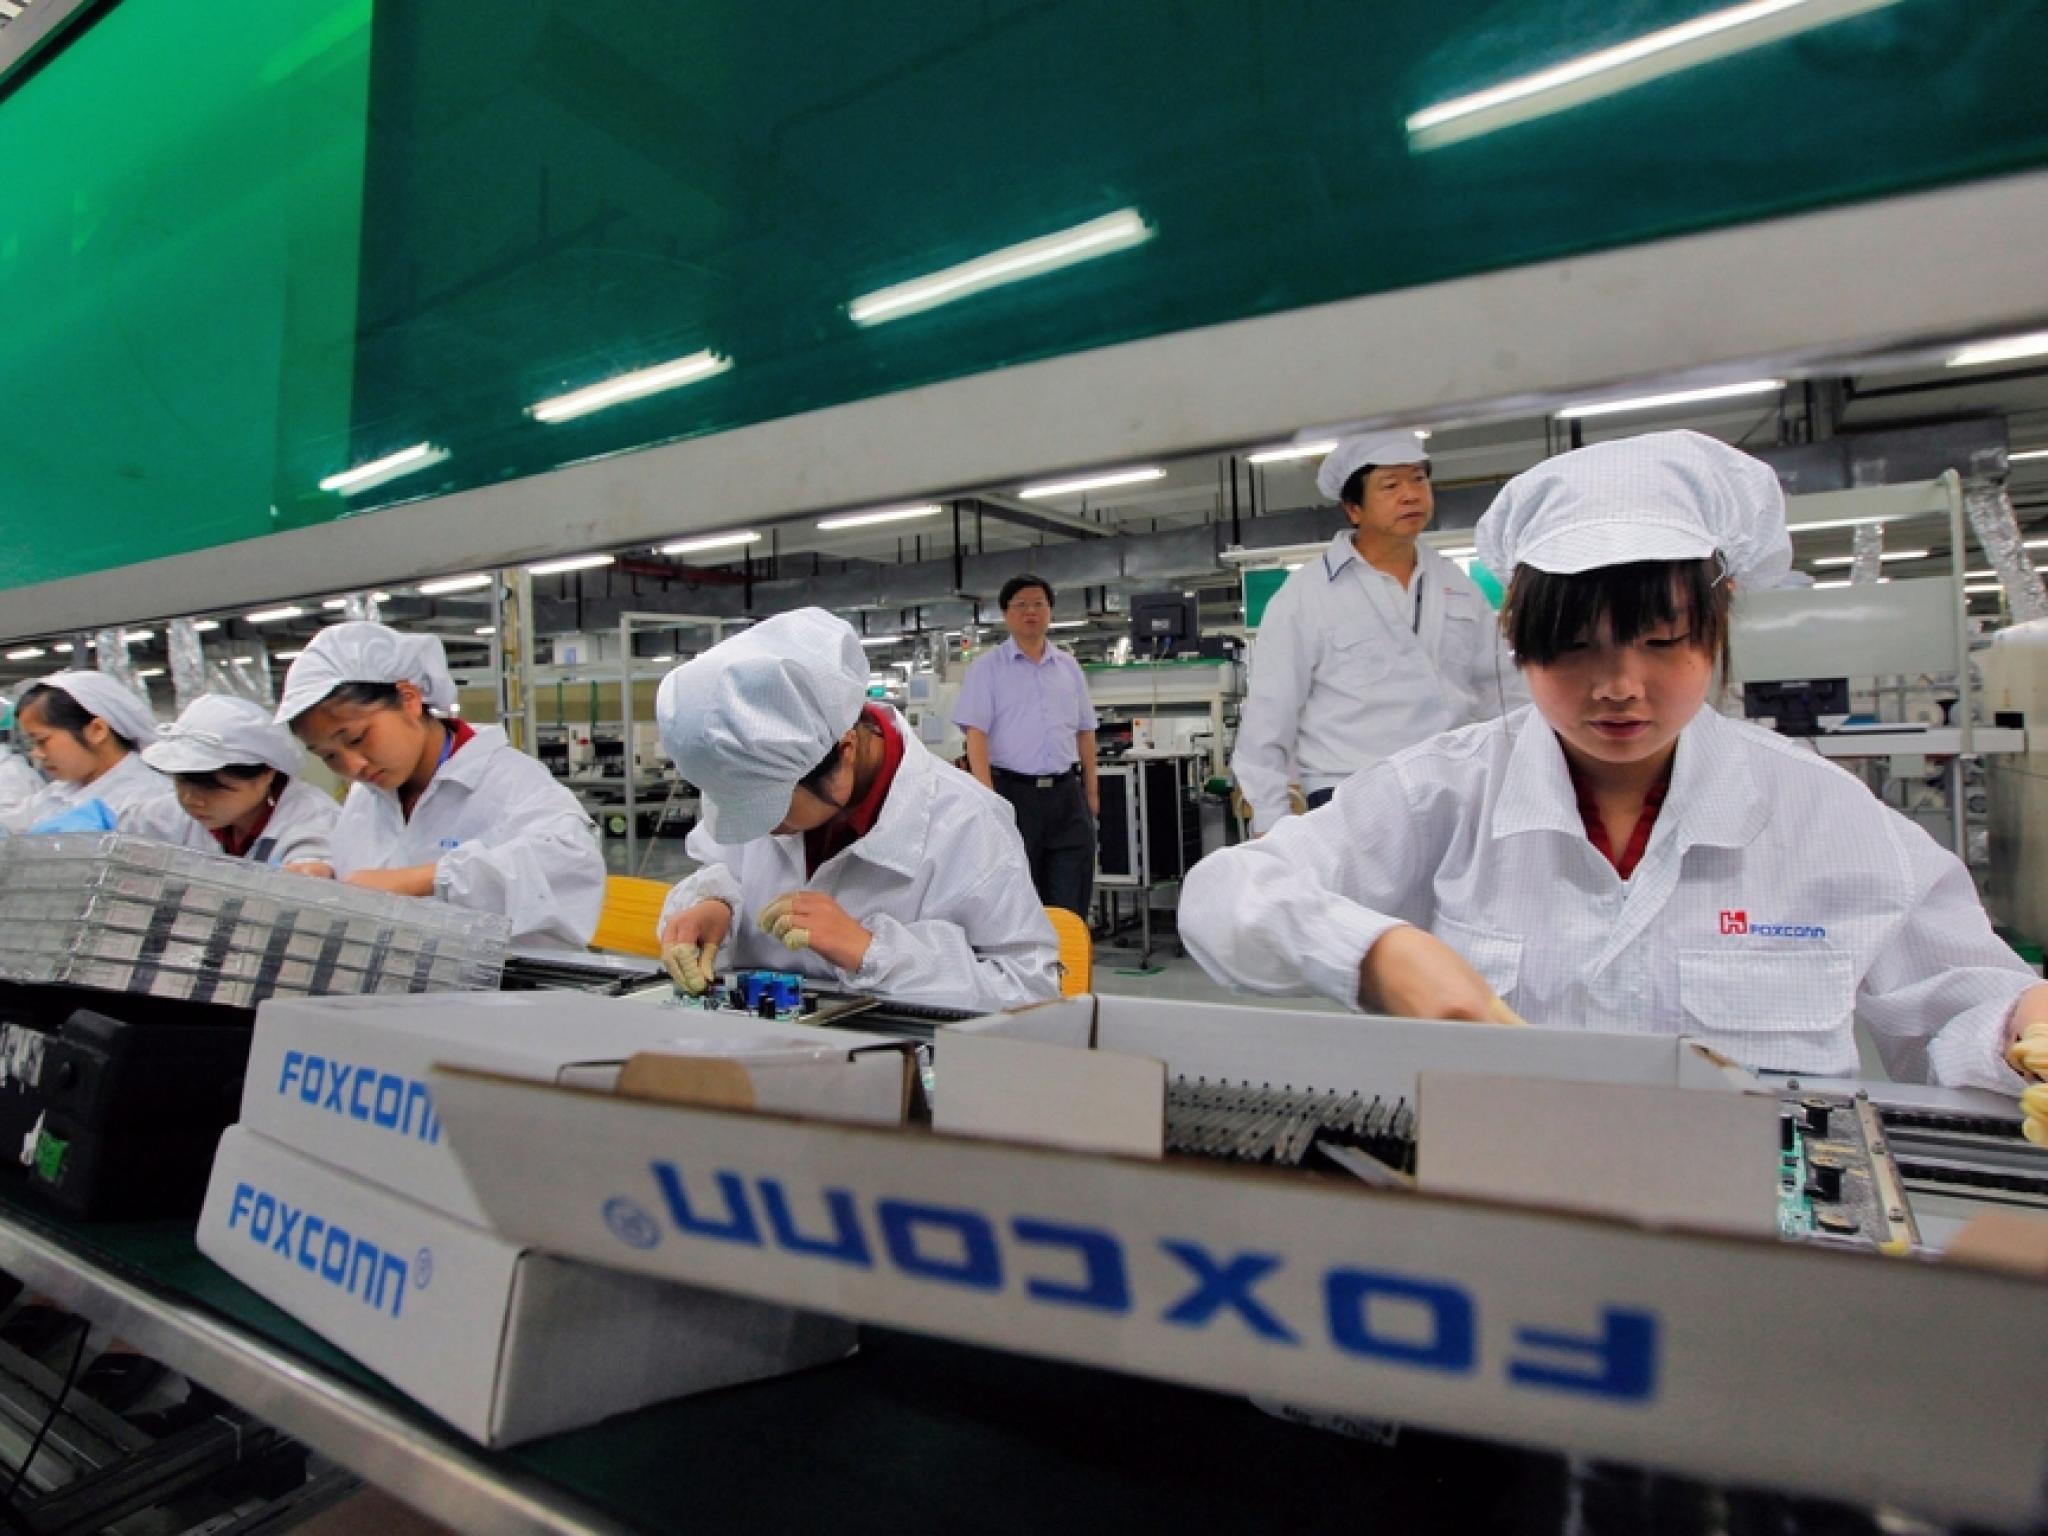 Les travailleurs de l'unité Huawei de Foxconn reçoivent des salaires plus élevés que les assembleurs d'iPhone - Goliaths actualités boursière